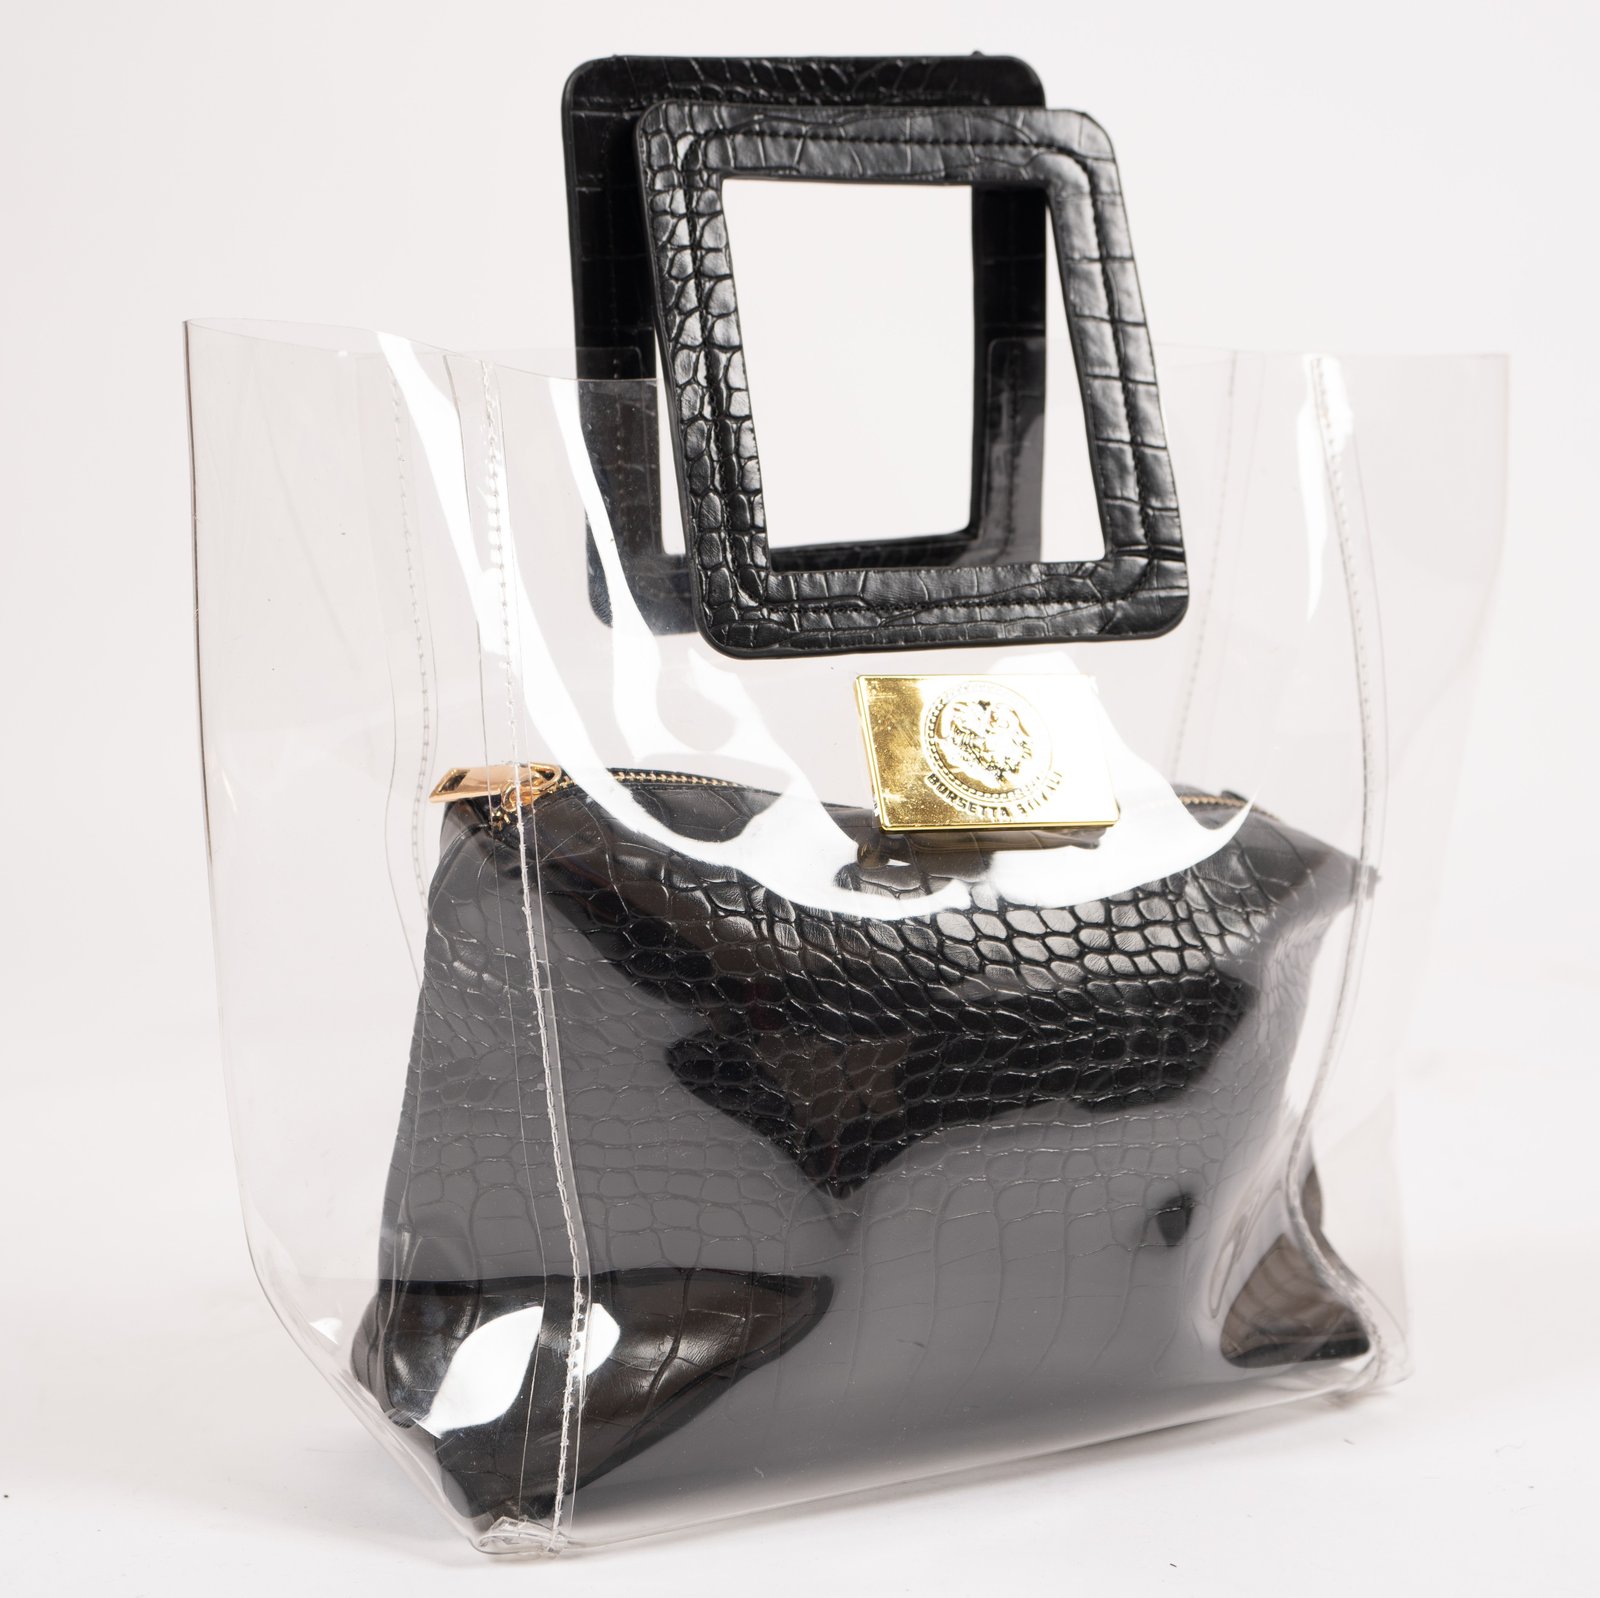 Borsetta Stivali Clear-Bag-Side-1 Borsetta Stivali Classic Bag - Black with Red Suede Interior  